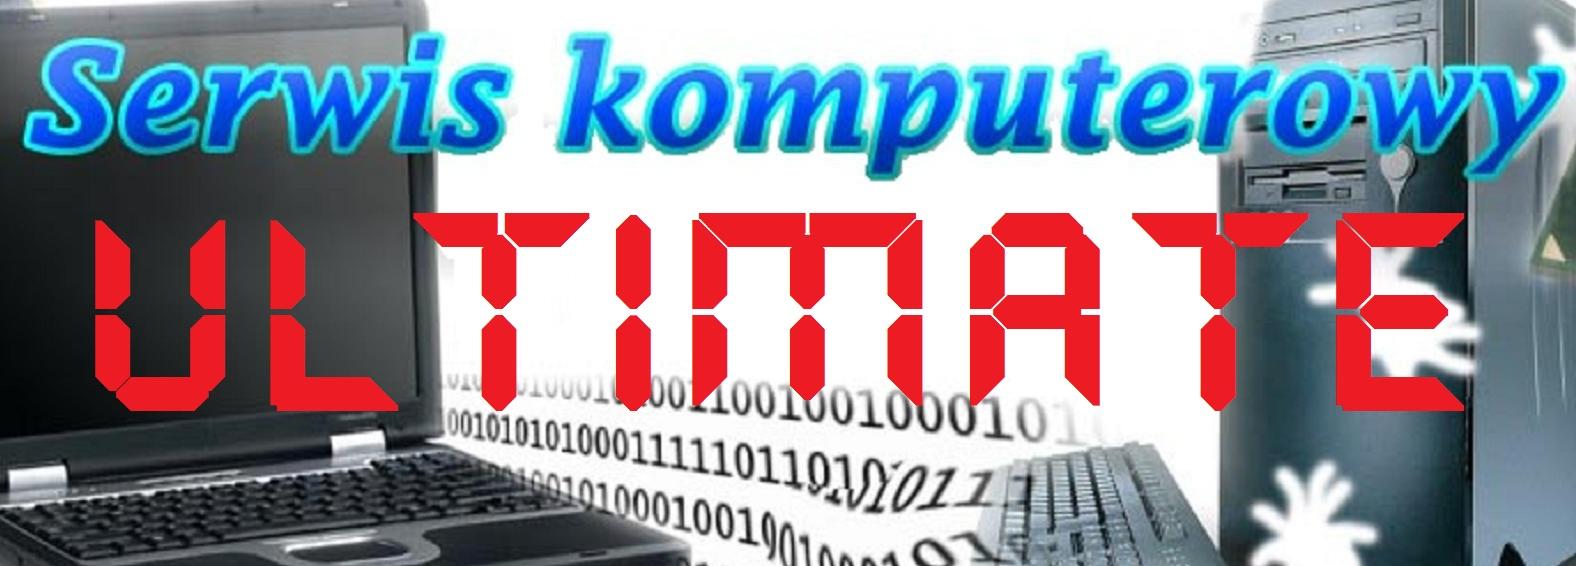 Ultimate-com Serwis Komputerowy, Poznań, wielkopolskie